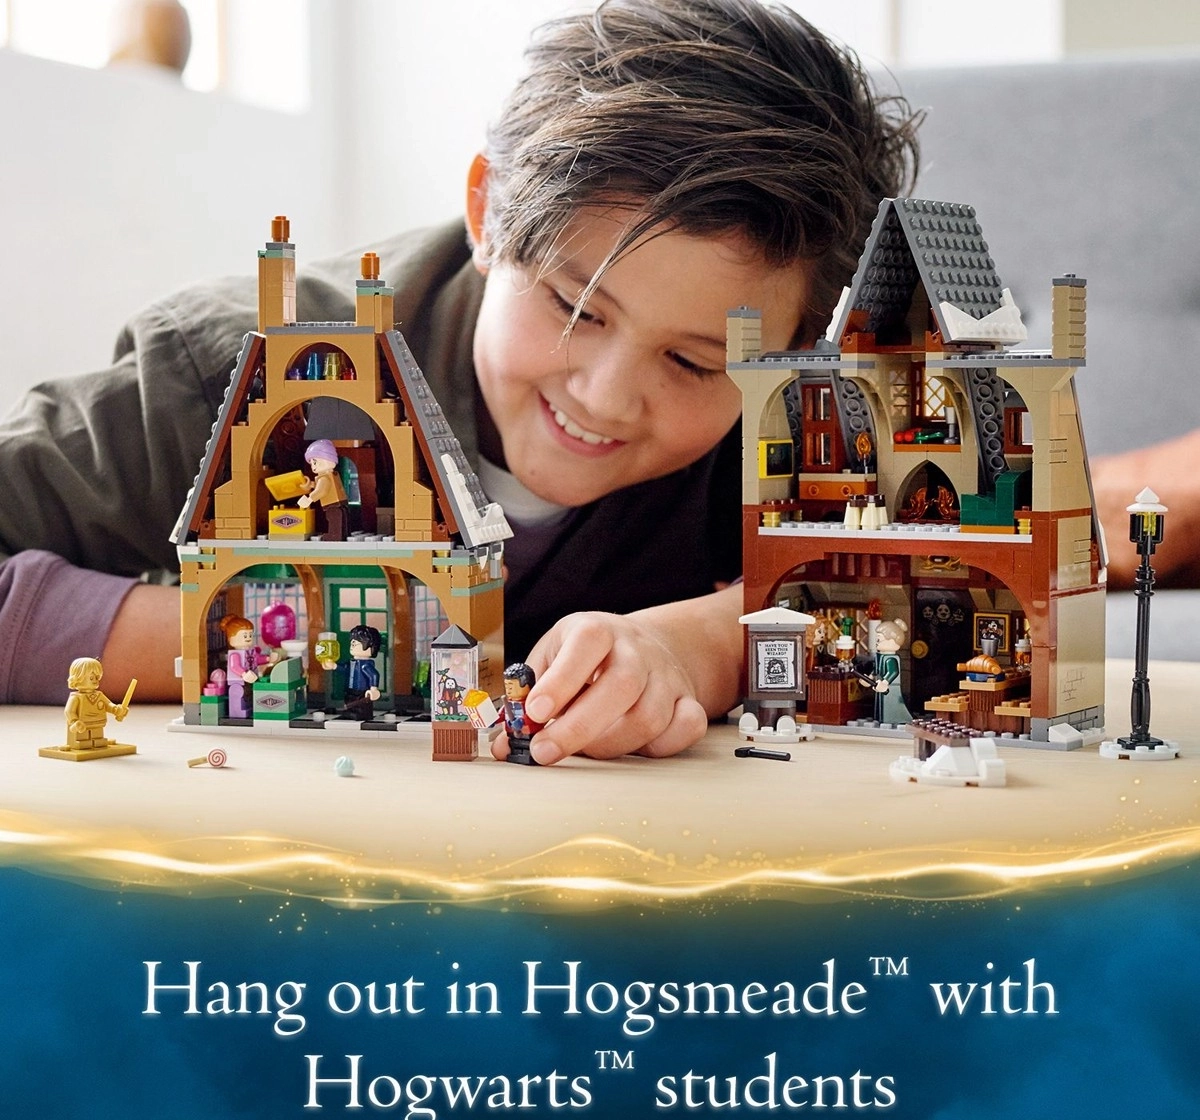 LEGO Harry Potter Hogsmeade Village Visit 76388 Building Kit 851 Pieces Multicolour 8Y+